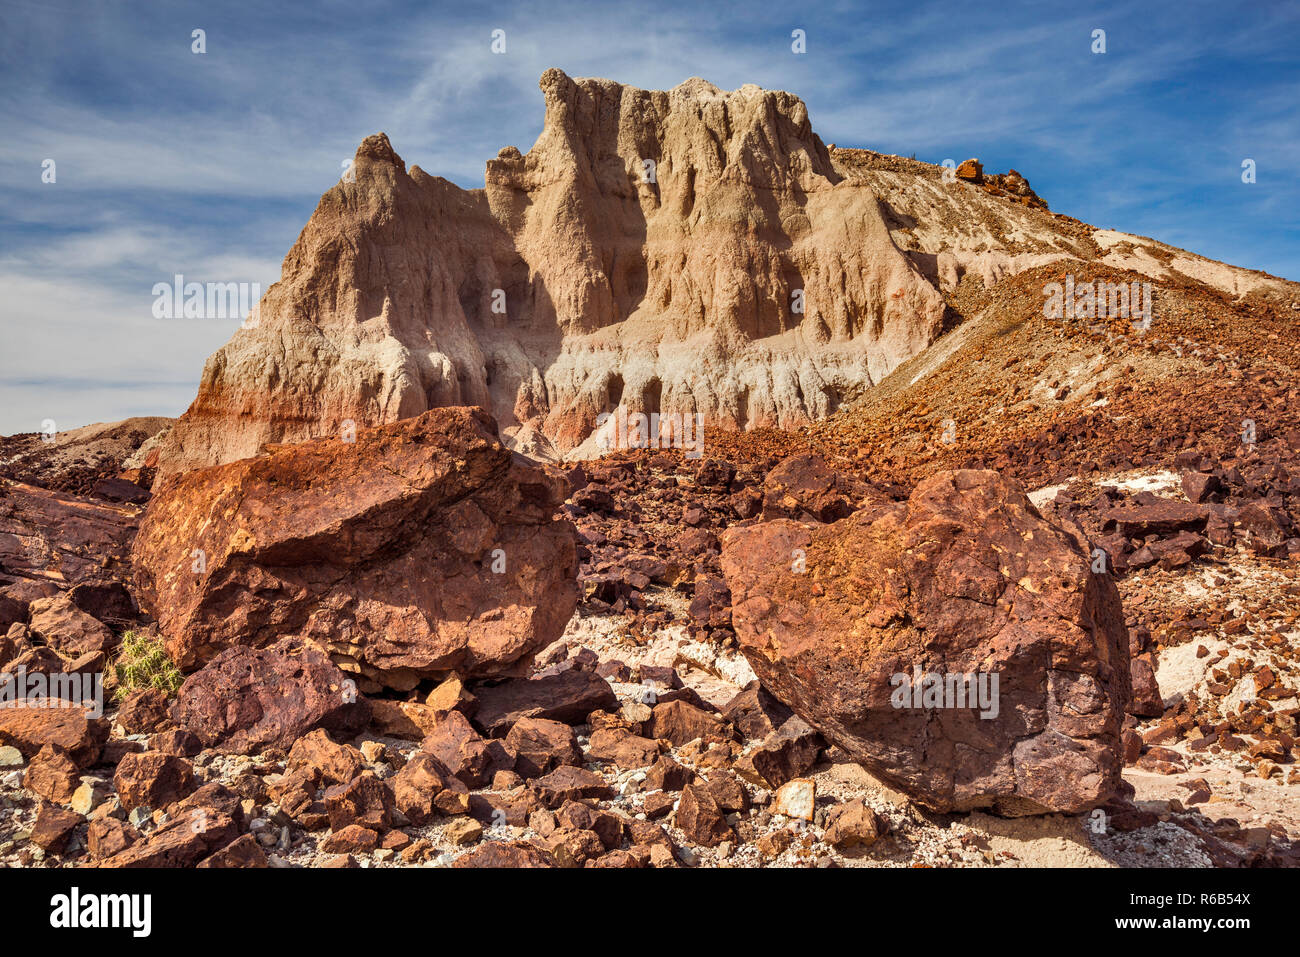 Vulkanischen Formationen und Felsen in Cerro Castellan, Ross Maxwell landschaftlich reizvolle Fahrt, Chihuahuan Wüste, Big Bend National Park, Texas, USA Stockfoto